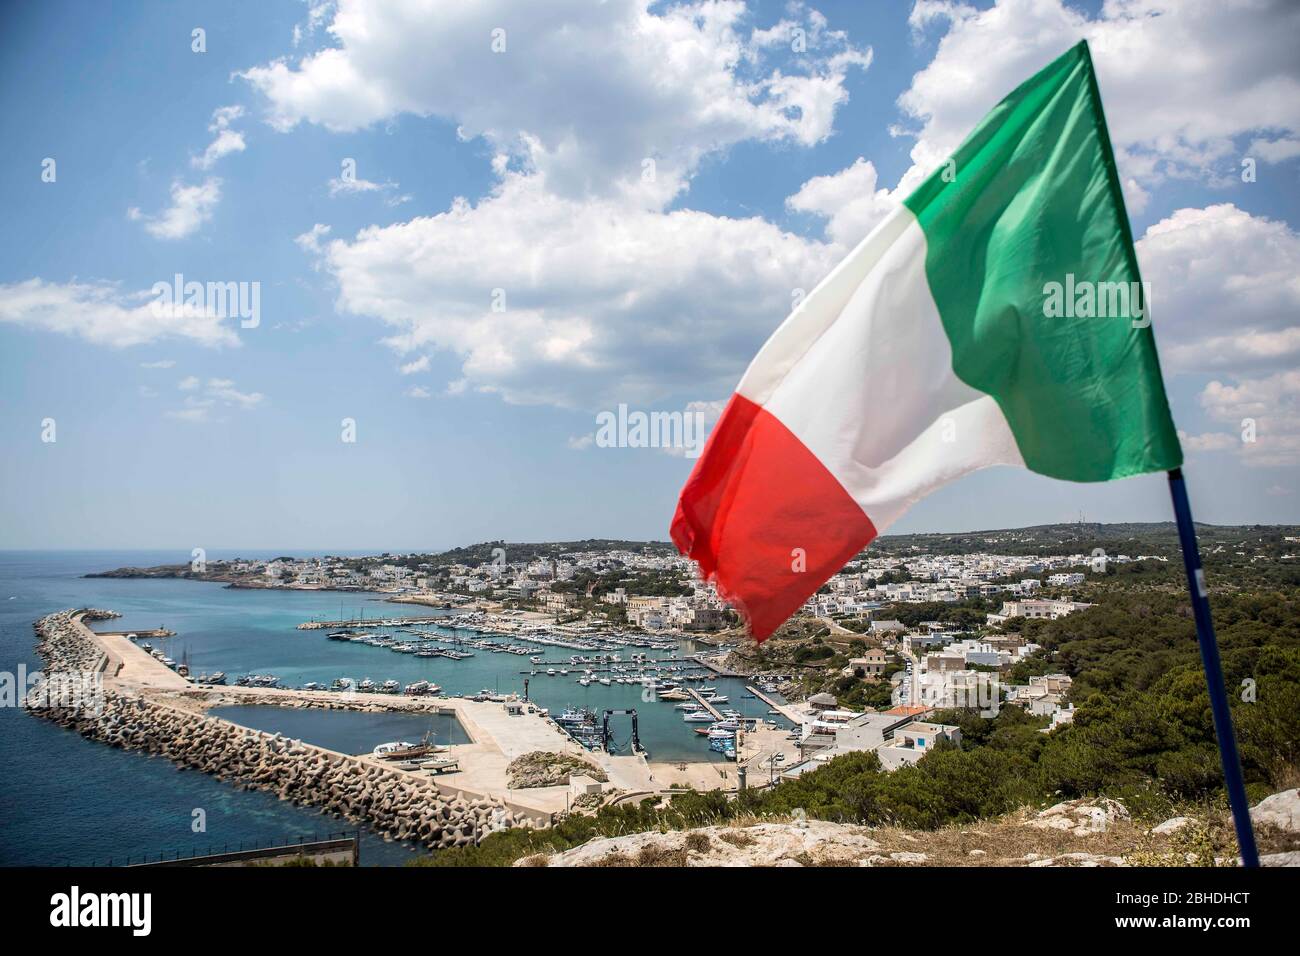 Die italienische Flagge in den Farben Grün-Weiss-Rot wht über der Stadt Santa Maria di Leuca in Apulien in Süditalien. Unterhalb des Kaps sieht man di Banque D'Images